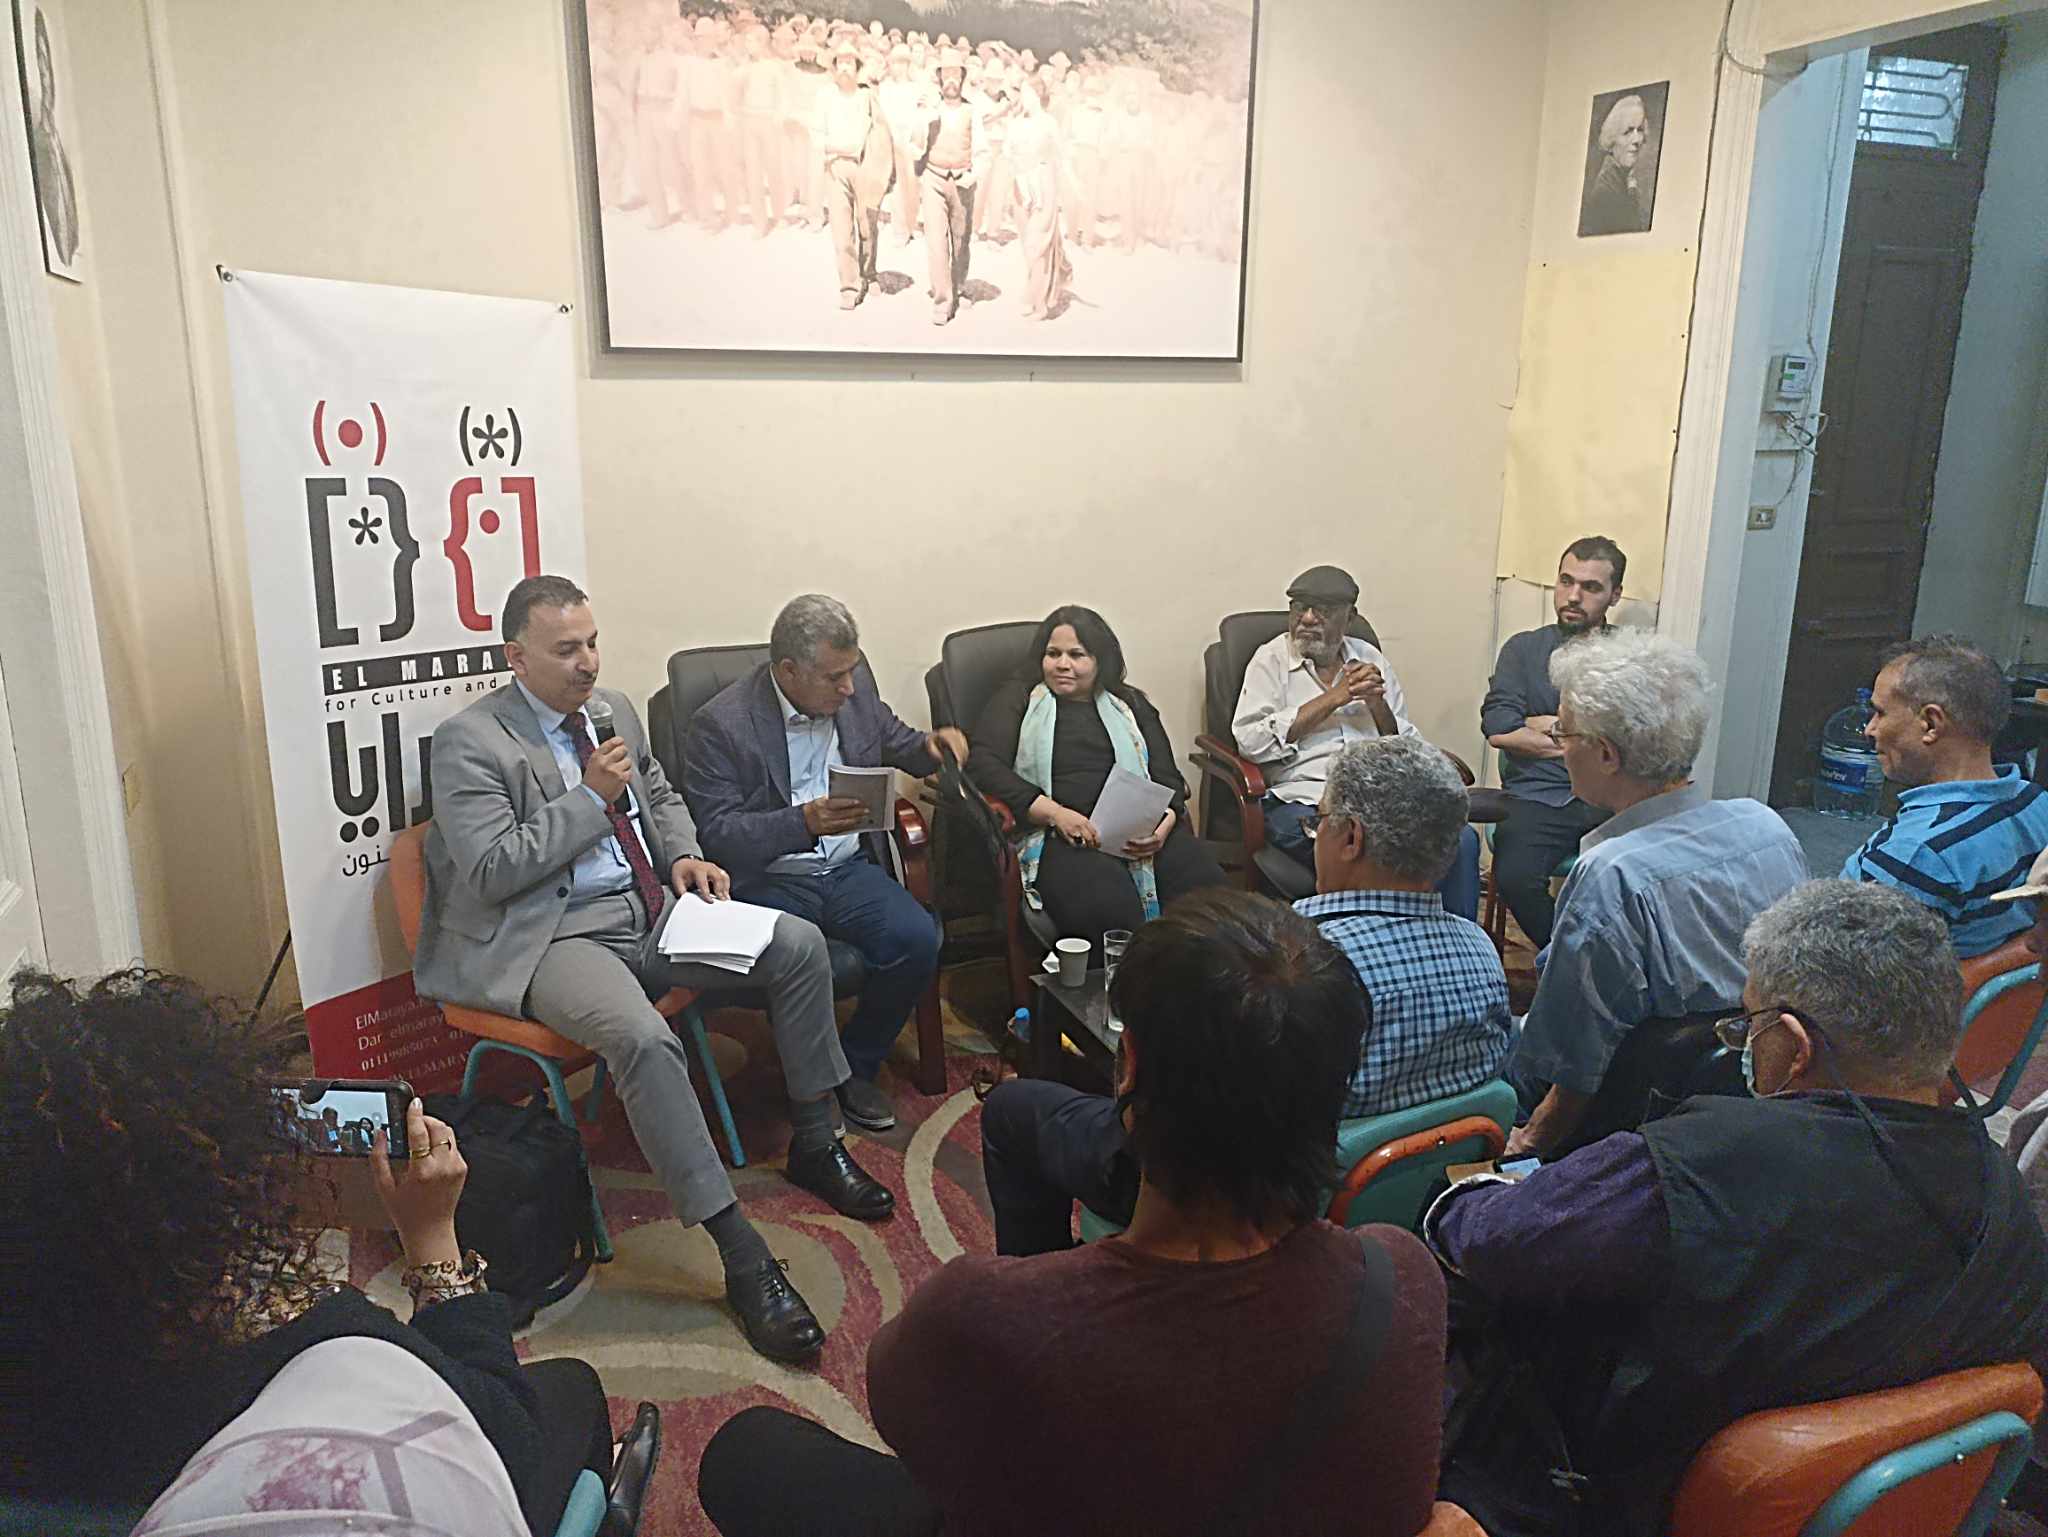 مناقشة ديوان "الوقت خارج الوحدة" للشاعرة نجاة علي في صالون المرايا وسط حضور كبير | خاص بالفيديو